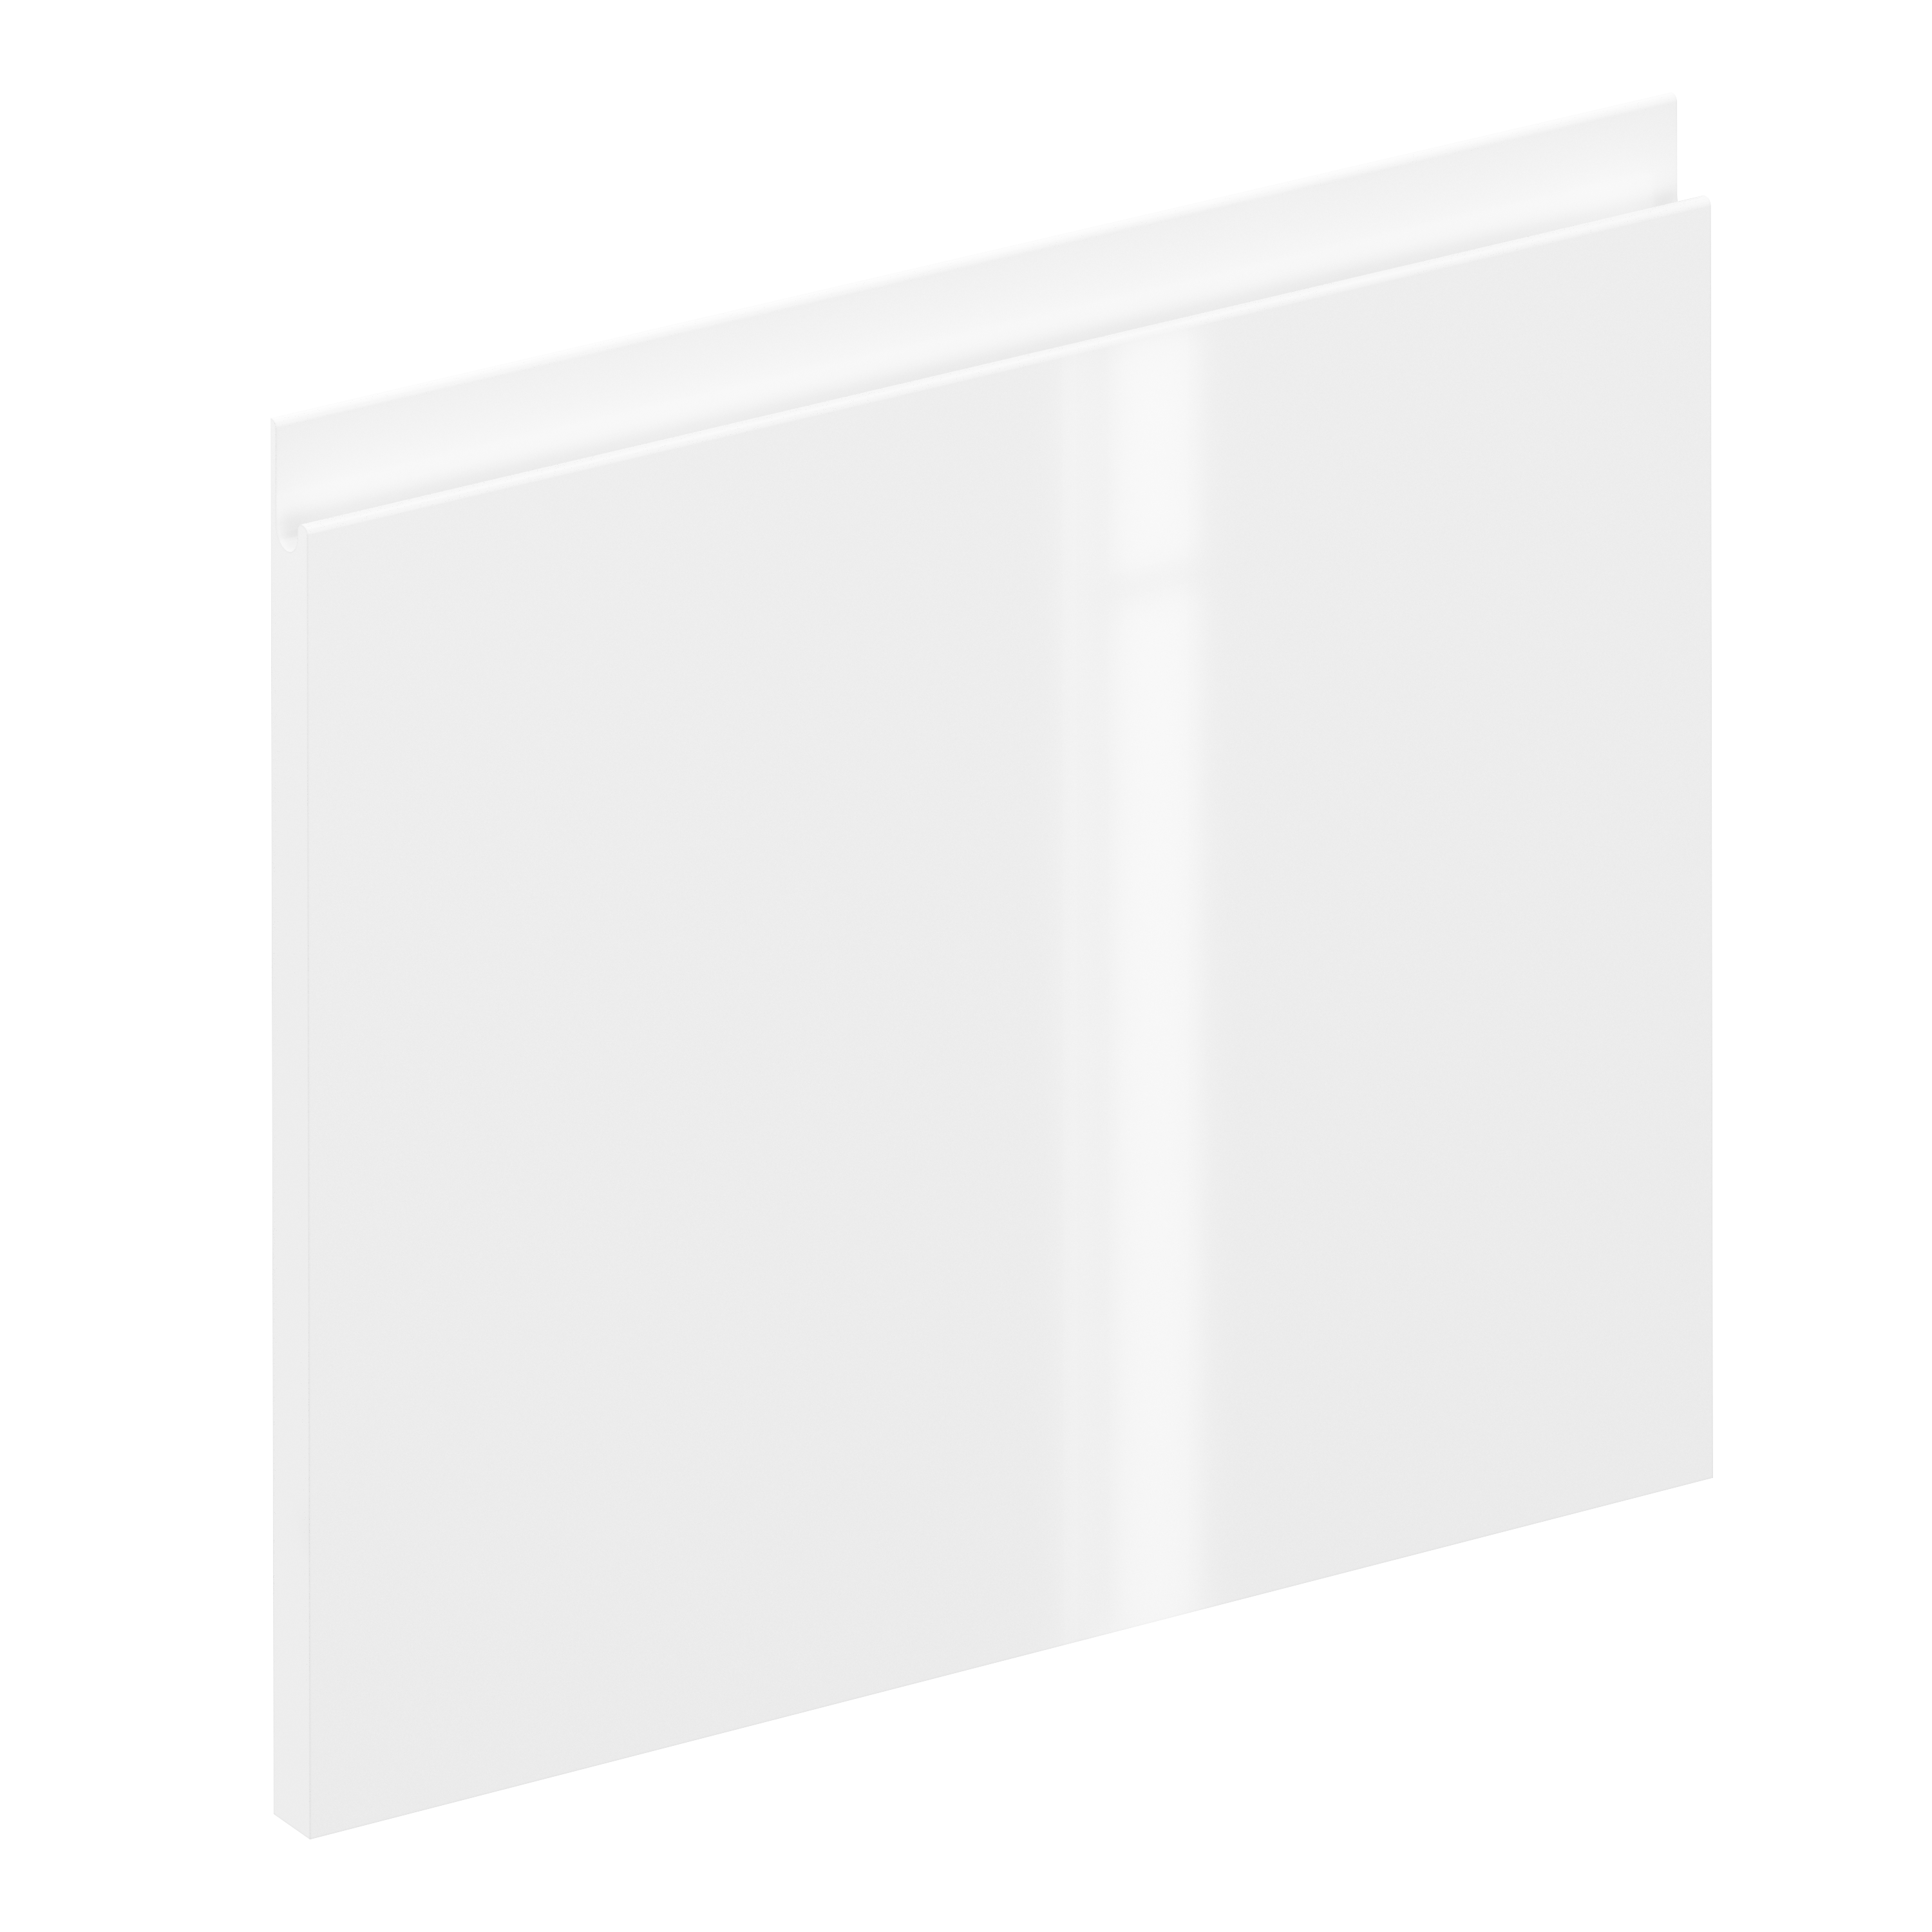 Frente de cajón de cocina tokyo blanco brillo h 38.4 x l 45 cm